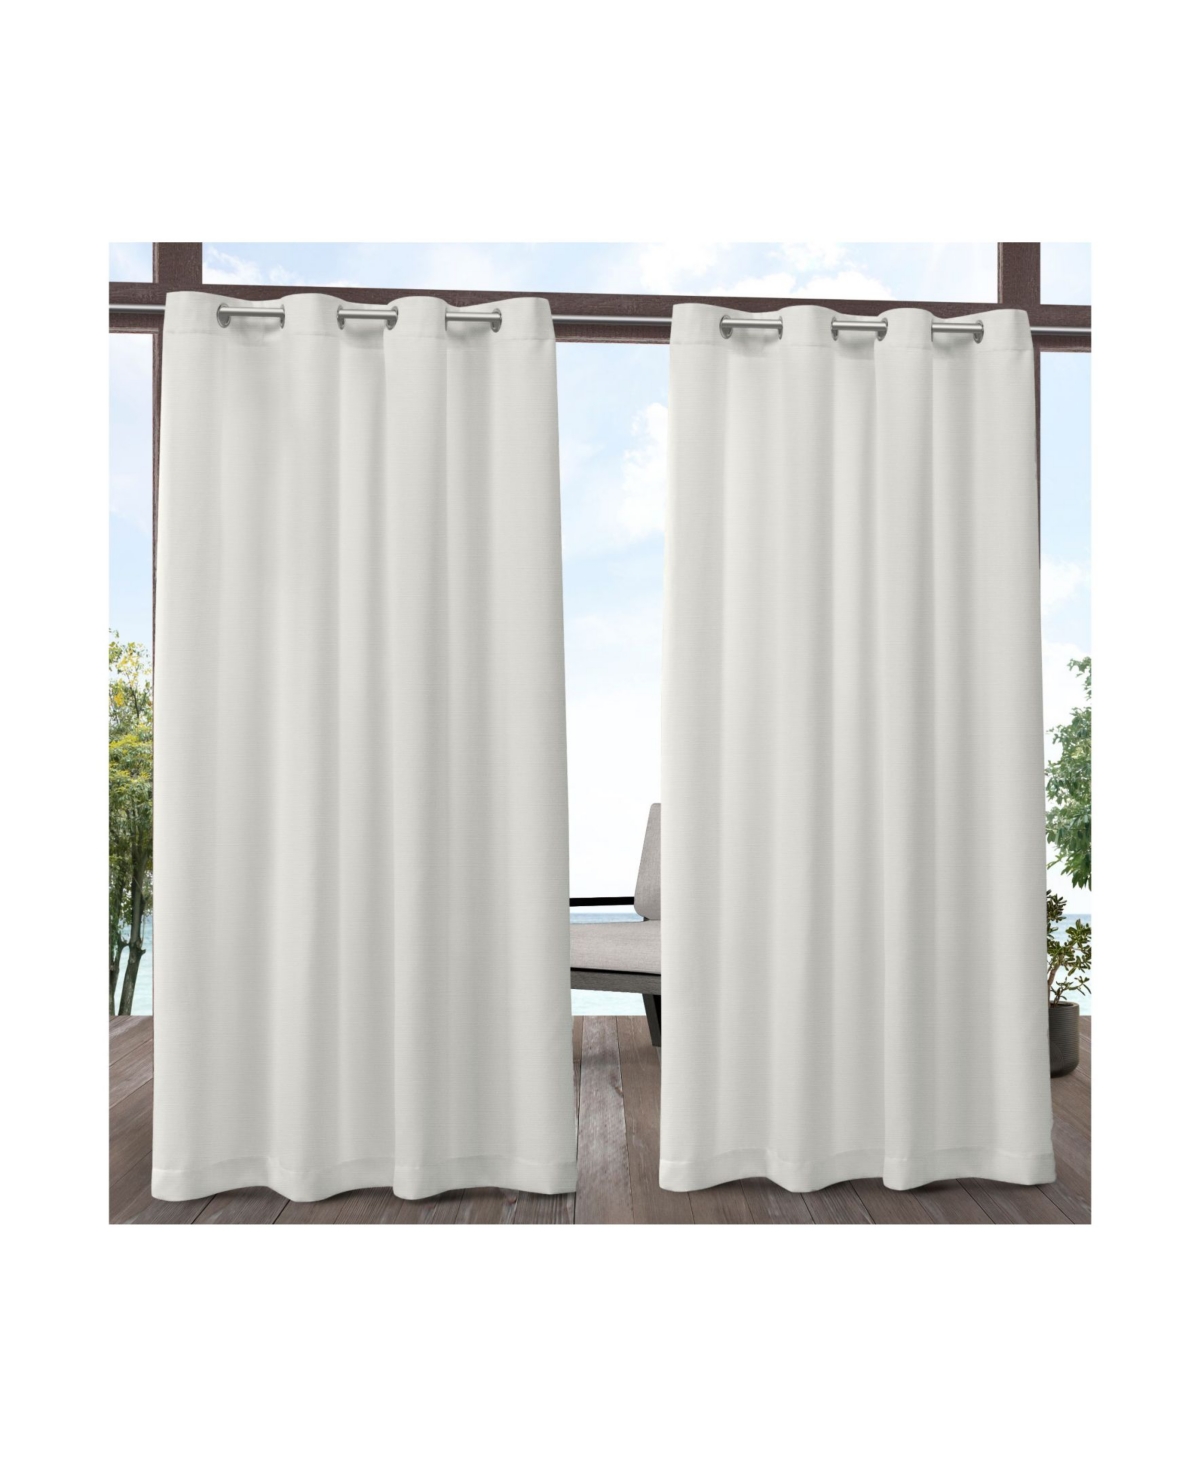 Delano Heavyweight Textured Indoor/Outdoor Grommet Top Curtain Panel Pair, 54" x 84" - Natural